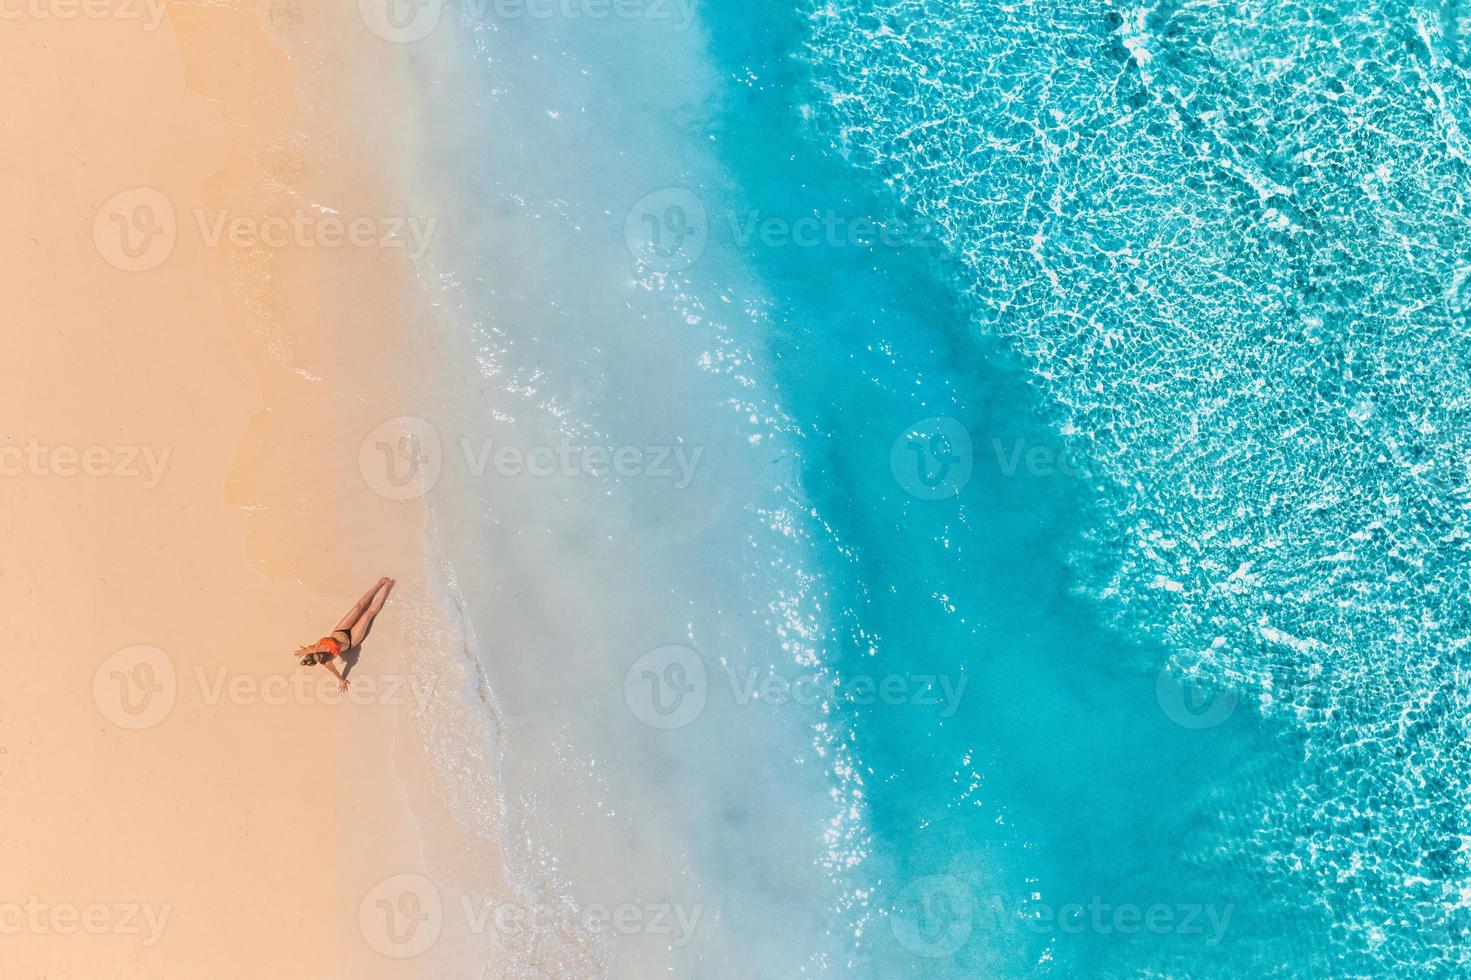 Luftaufnahme einer Frau am Strand in einem Bikini liegend und sonnenbadend. perfekte wellen, spritzer entspannender sommer freiheit luxus lebensstil foto